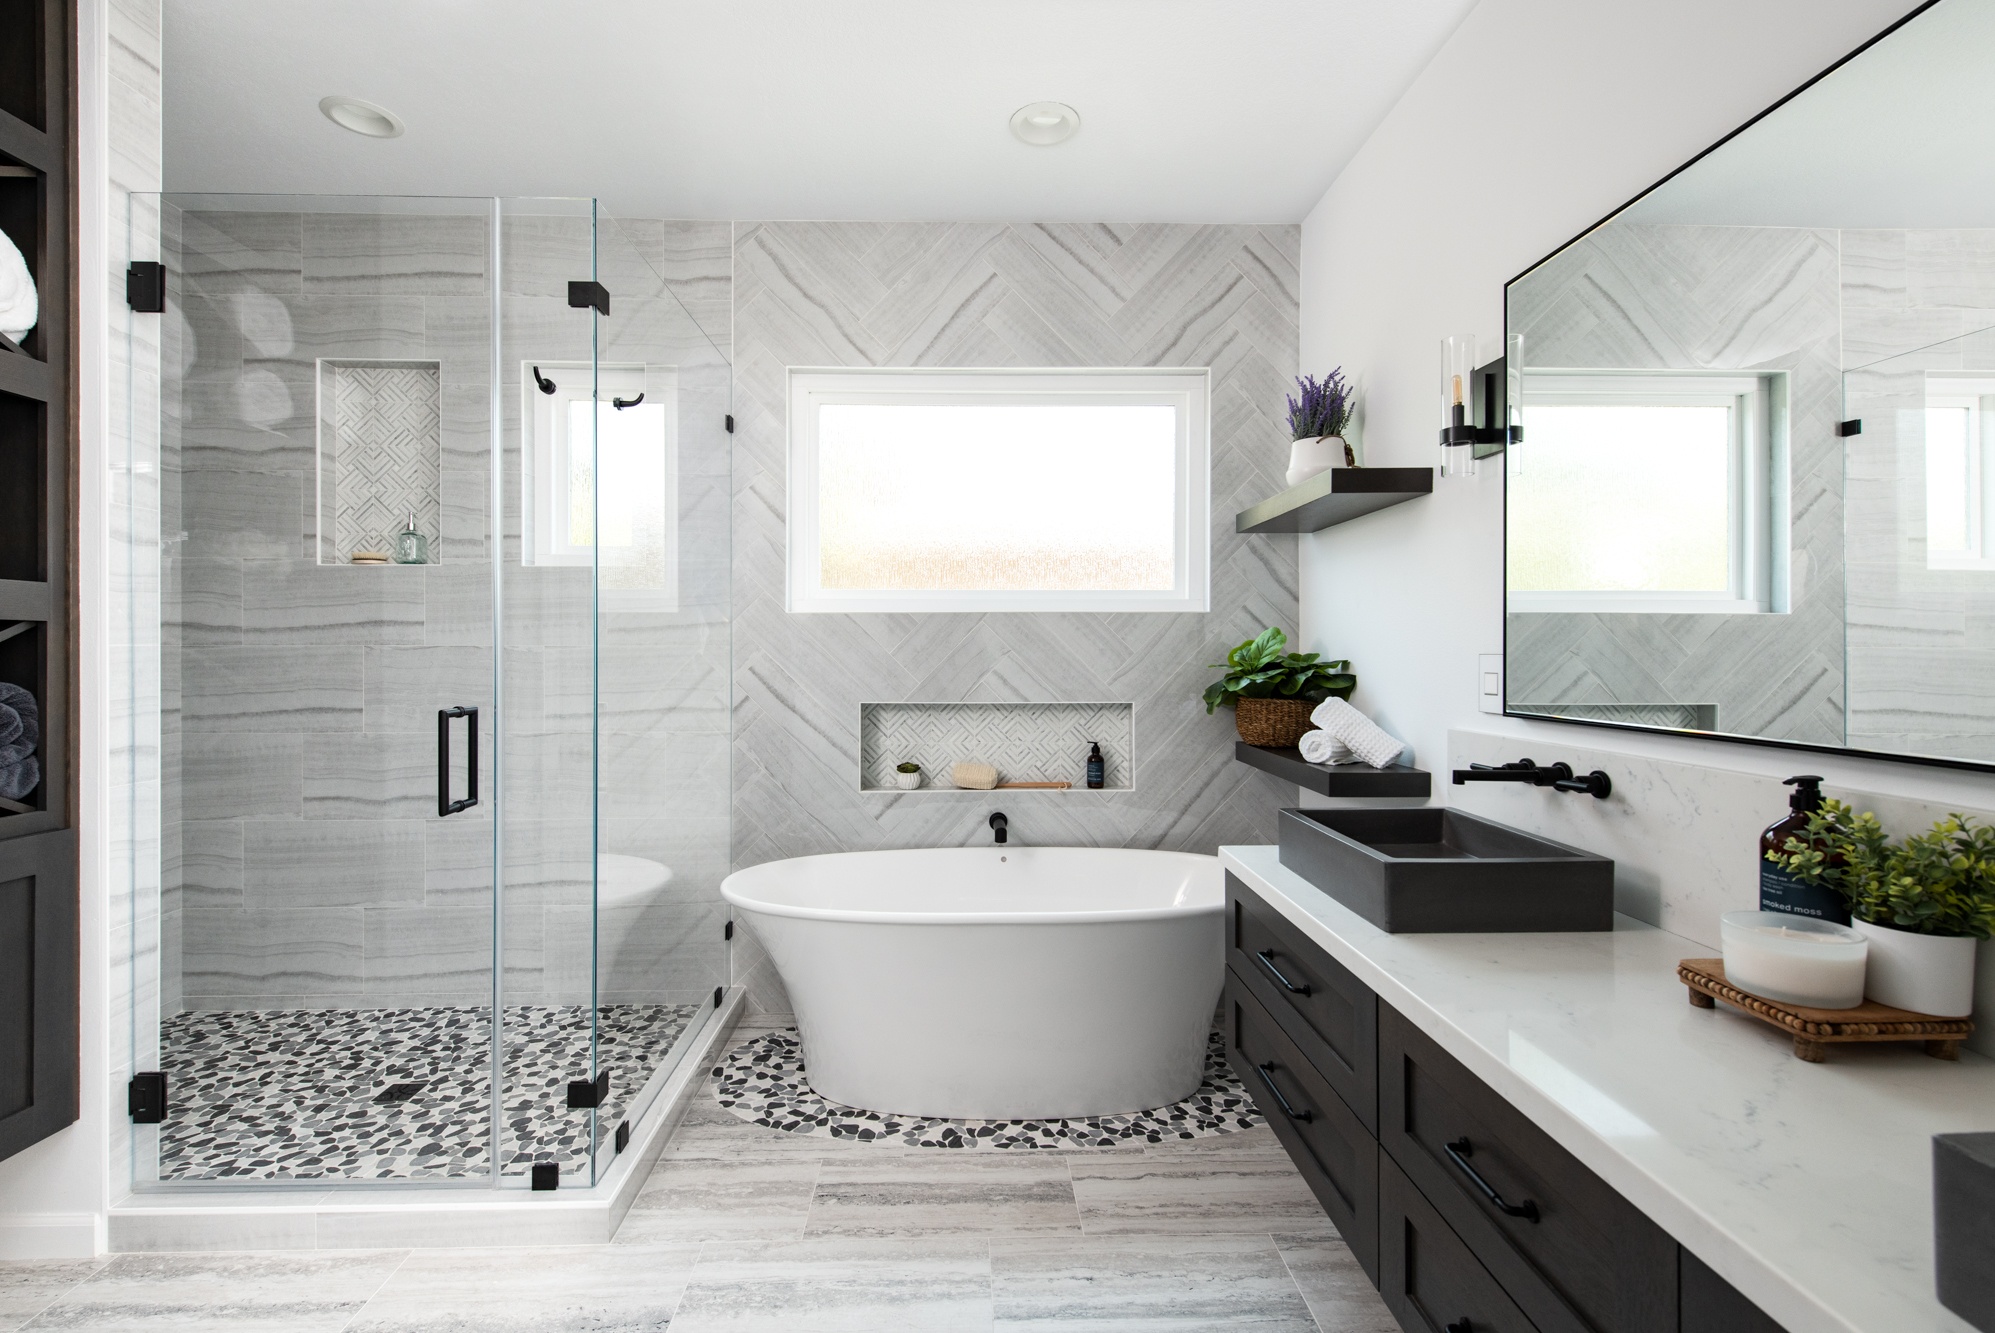 Master Bathroom Remodel With Herringbone Pattern Wall Tile 